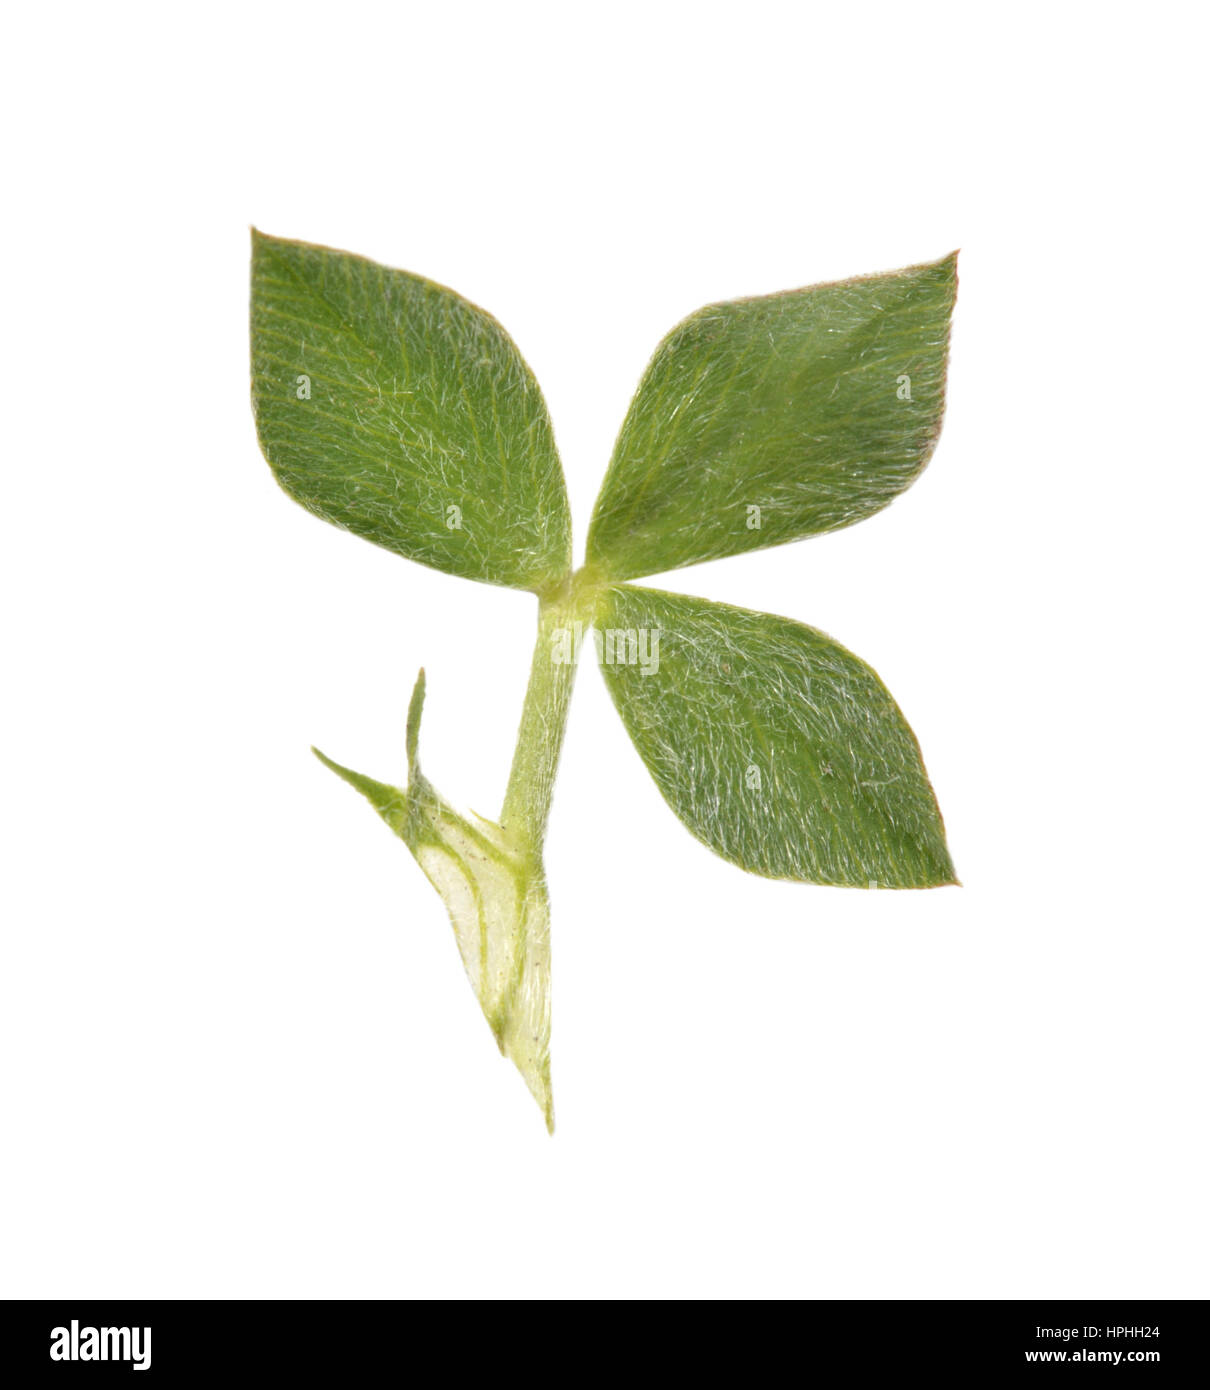 Knotted Clover - Trifolium striatum Stock Photo